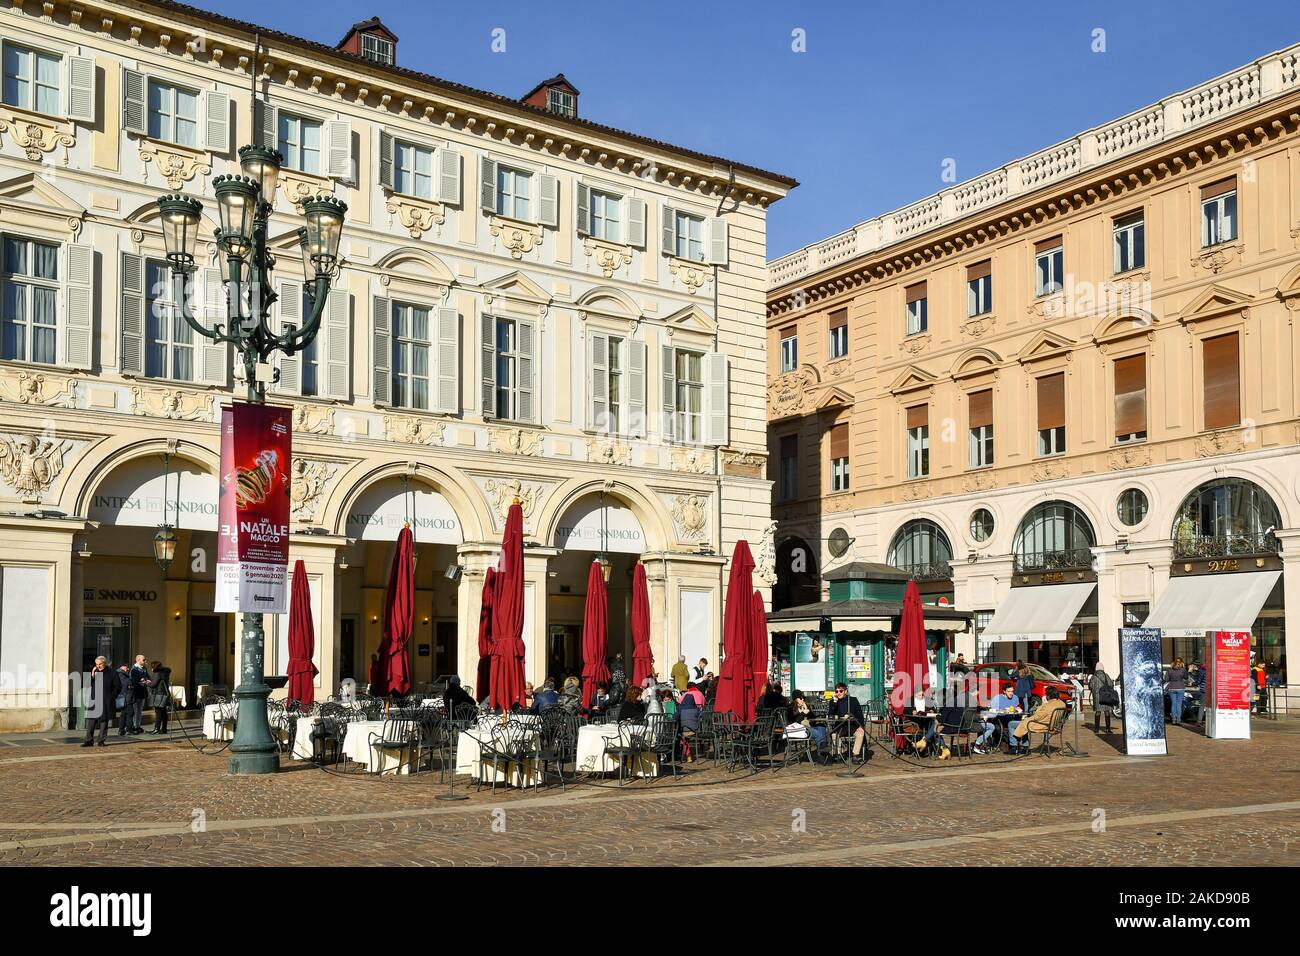 Aperçu de la Piazza San Carlo, dans le centre de Turin avec les gens profiter du soleil dans un café-terrasse le jour avant Noël, Piémont, Italie Banque D'Images